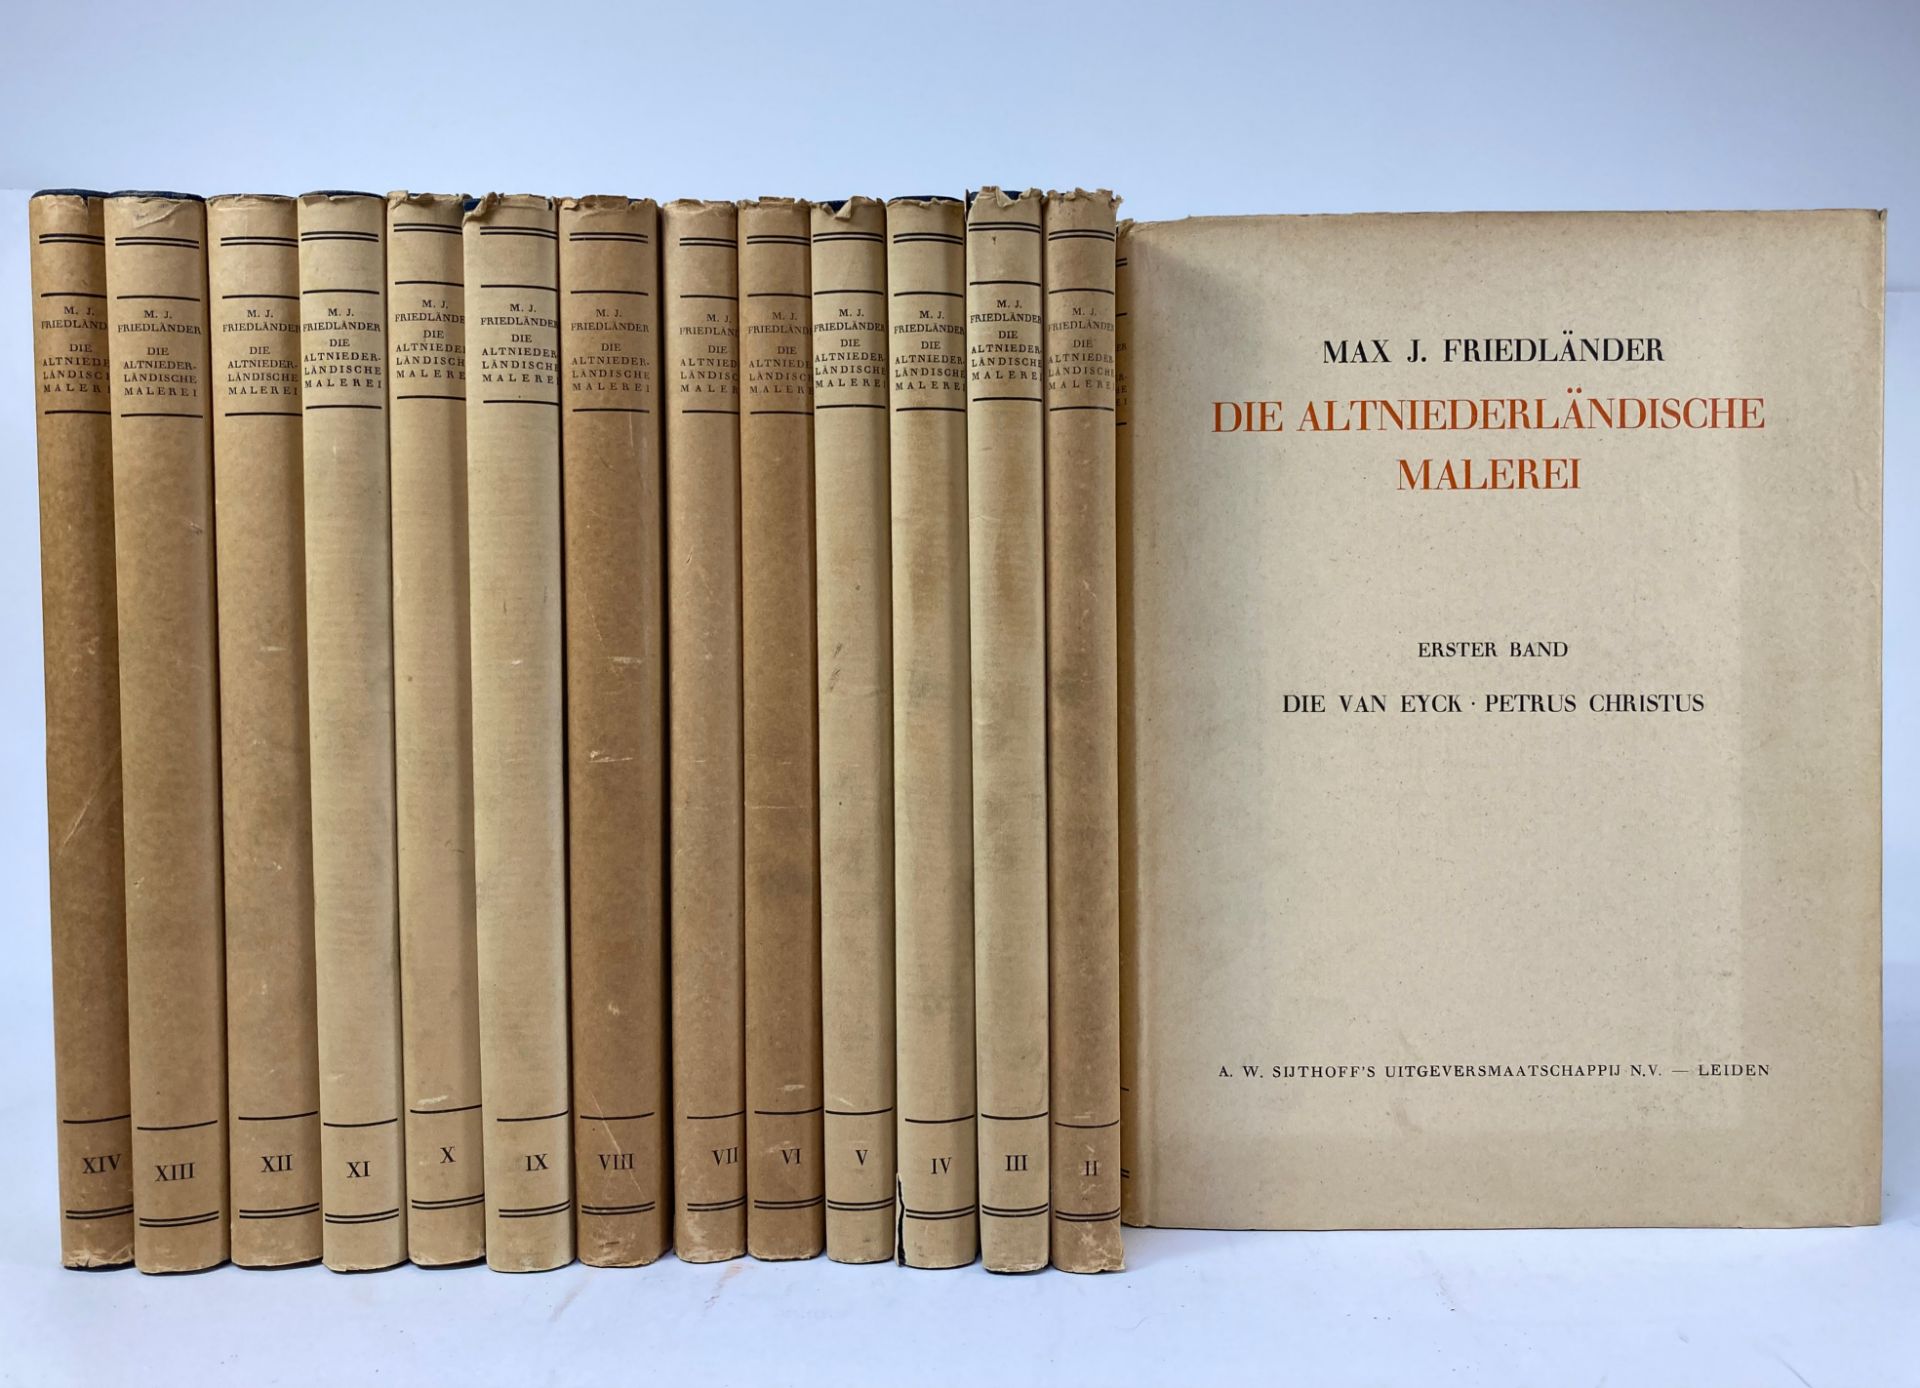 FRIEDLÄNDER, M.J. Die altniederländischen Malerei. Leid., Berl., 1934-37. 14 vols. Prof. ill